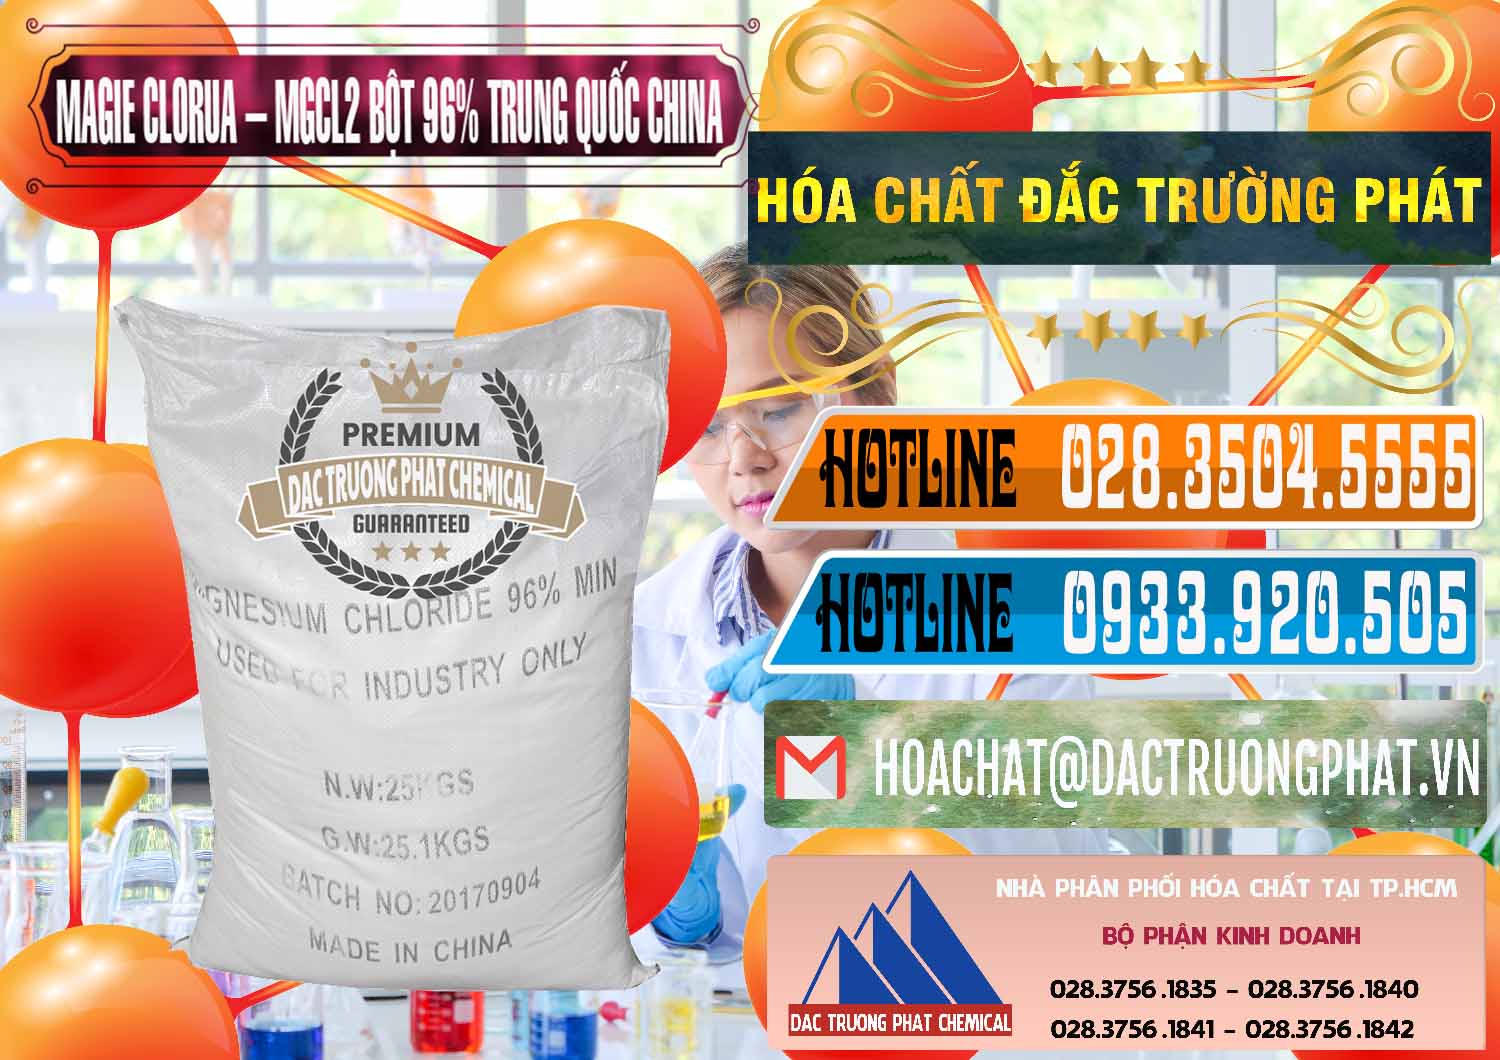 Cty chuyên cung cấp và bán Magie Clorua – MGCL2 96% Dạng Bột Bao Chữ Đen Trung Quốc China - 0205 - Cty chuyên kinh doanh và cung cấp hóa chất tại TP.HCM - stmp.net